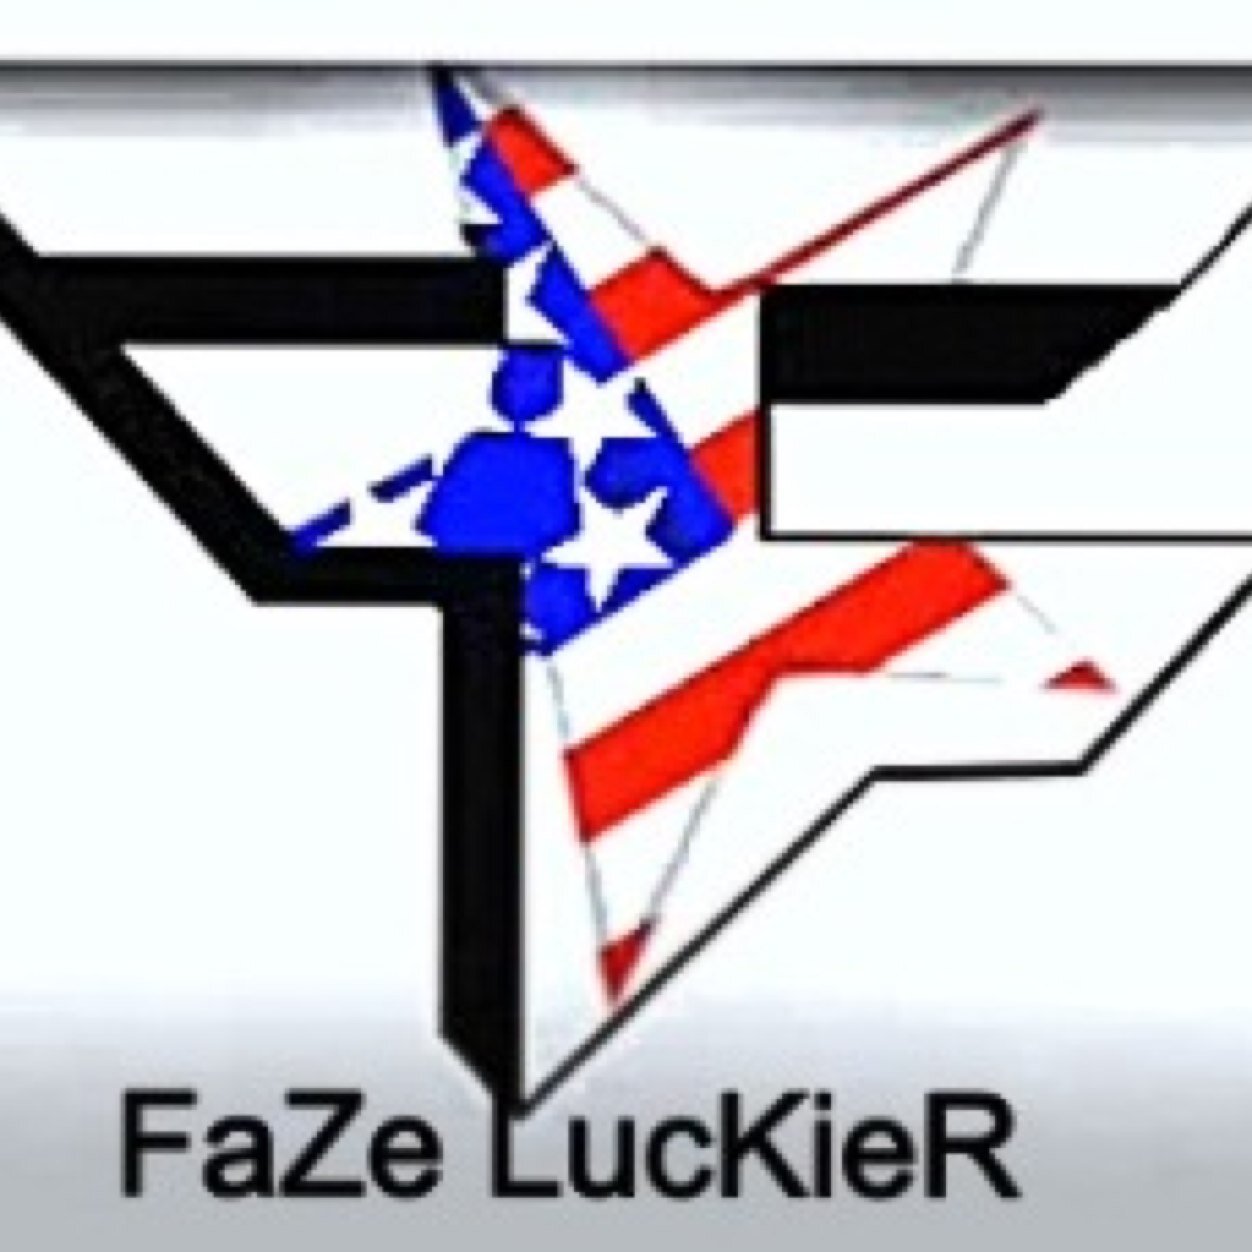 Hi I'm FaZe LucKieR and I'm a proud member of FaZe I was recruited by FaZe at 10/13/12. (FaZe Editor)